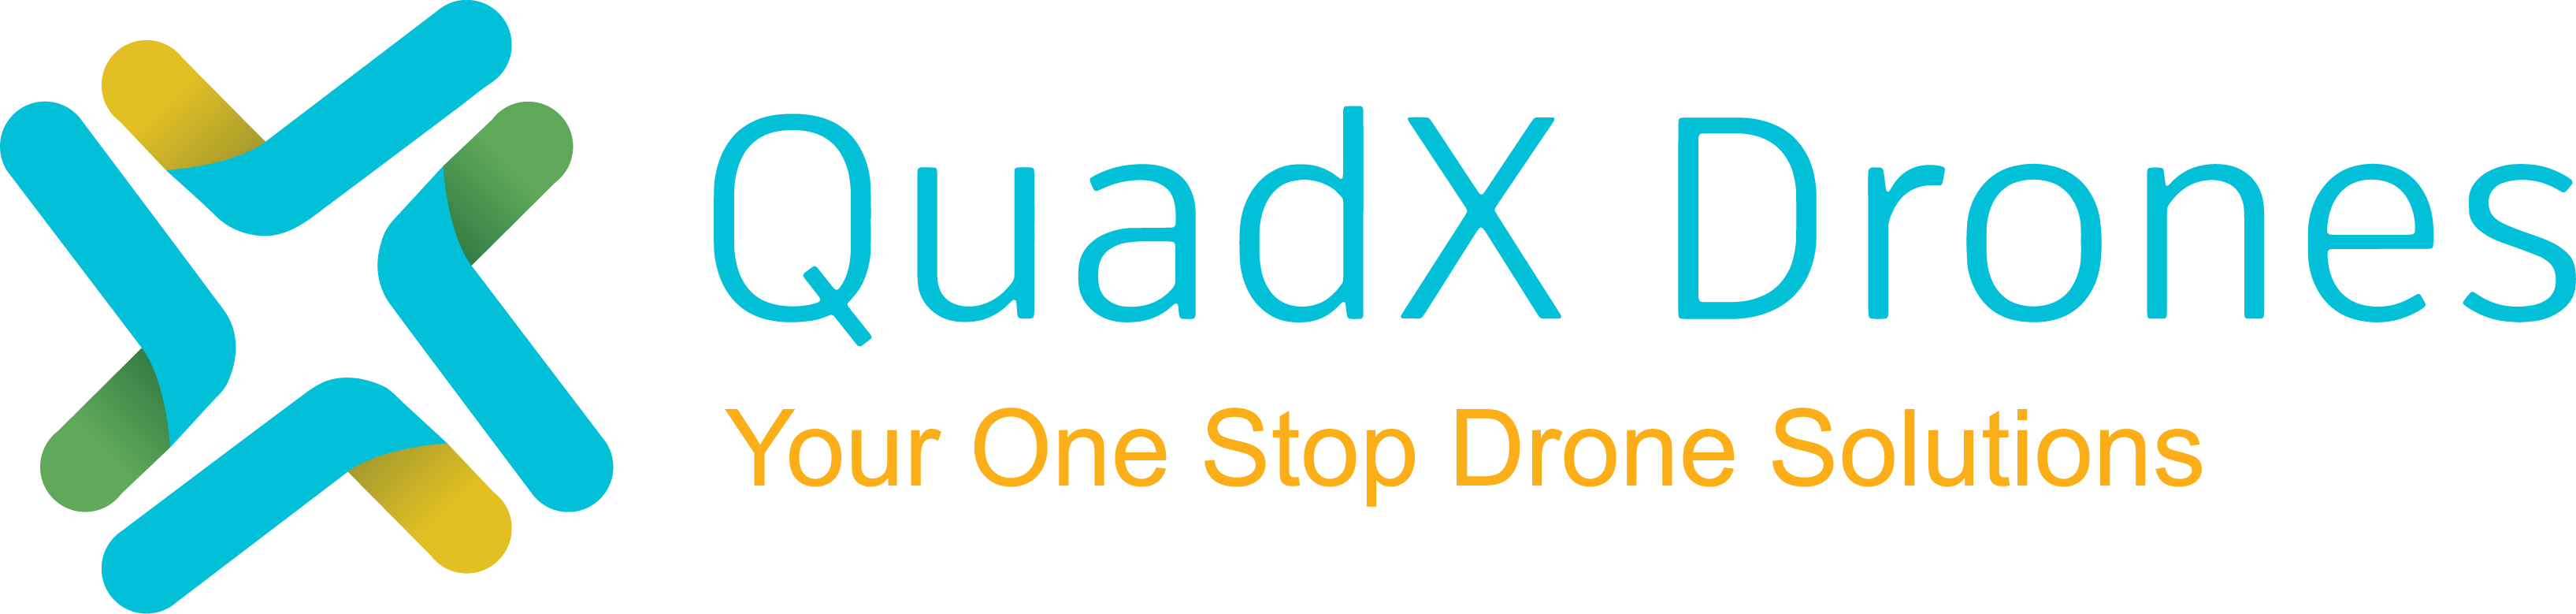 quadx drones dji